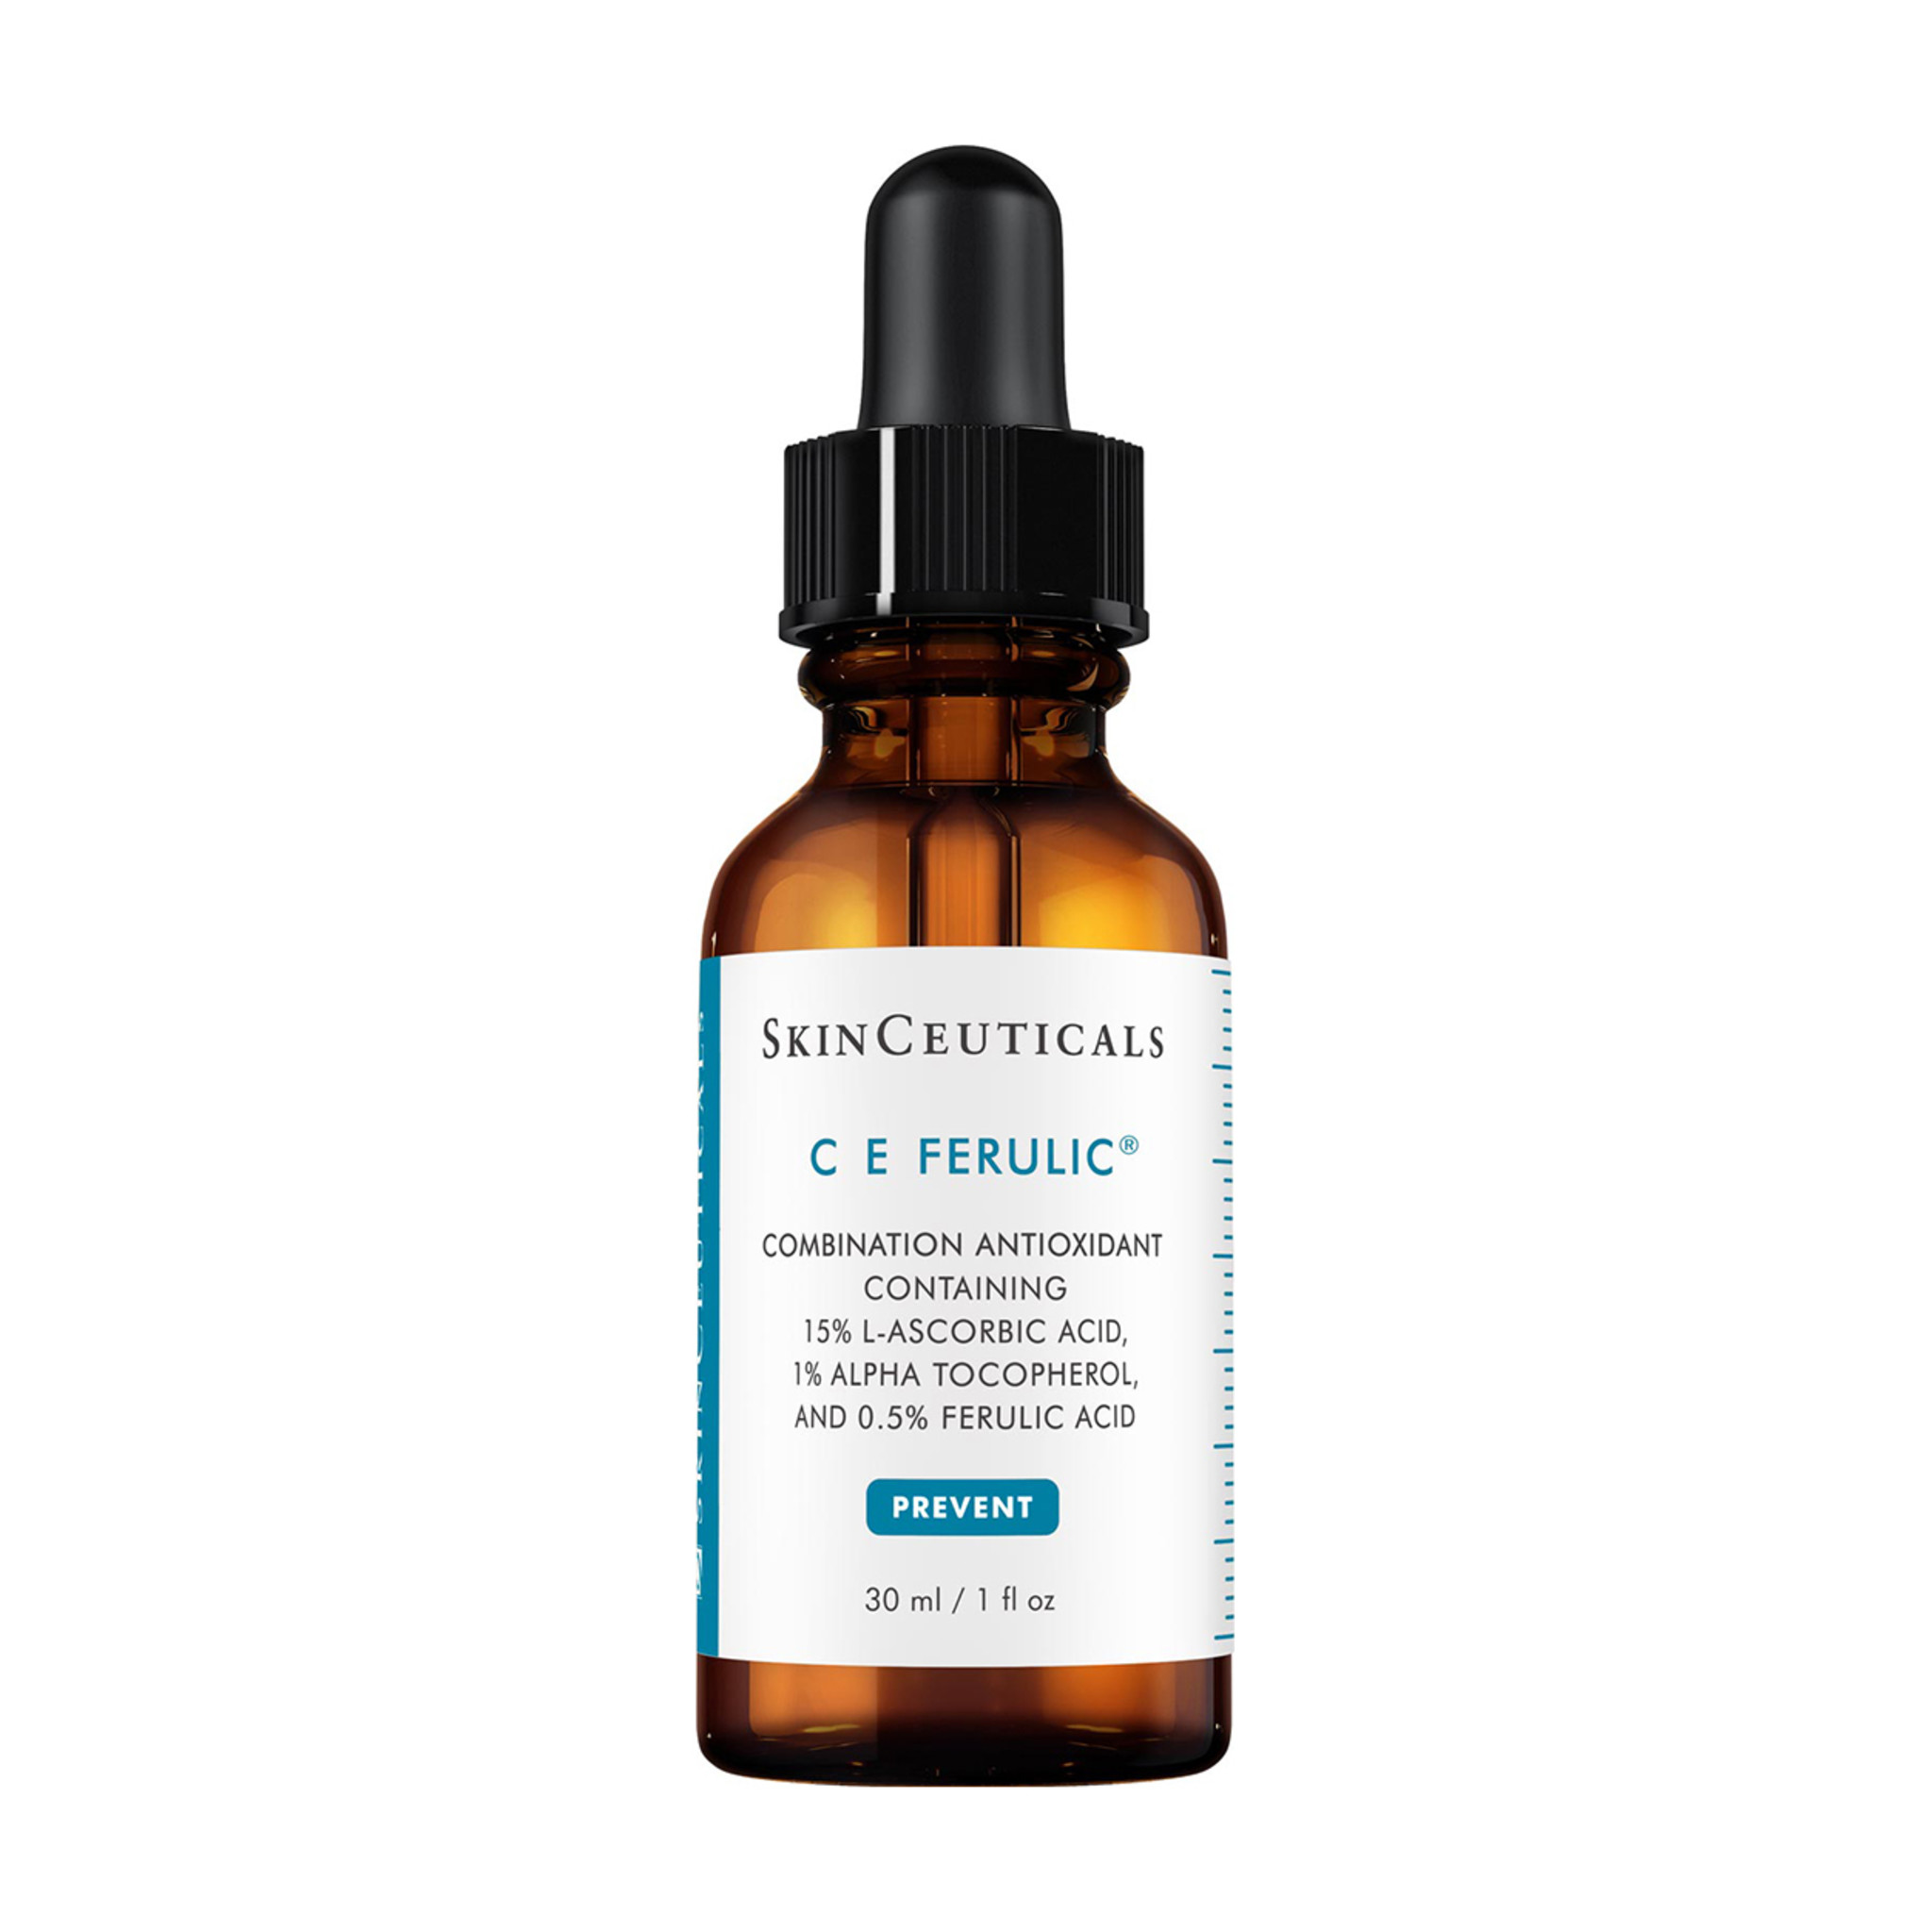 Tincture bottle of SkinCeuticals C E Ferulic